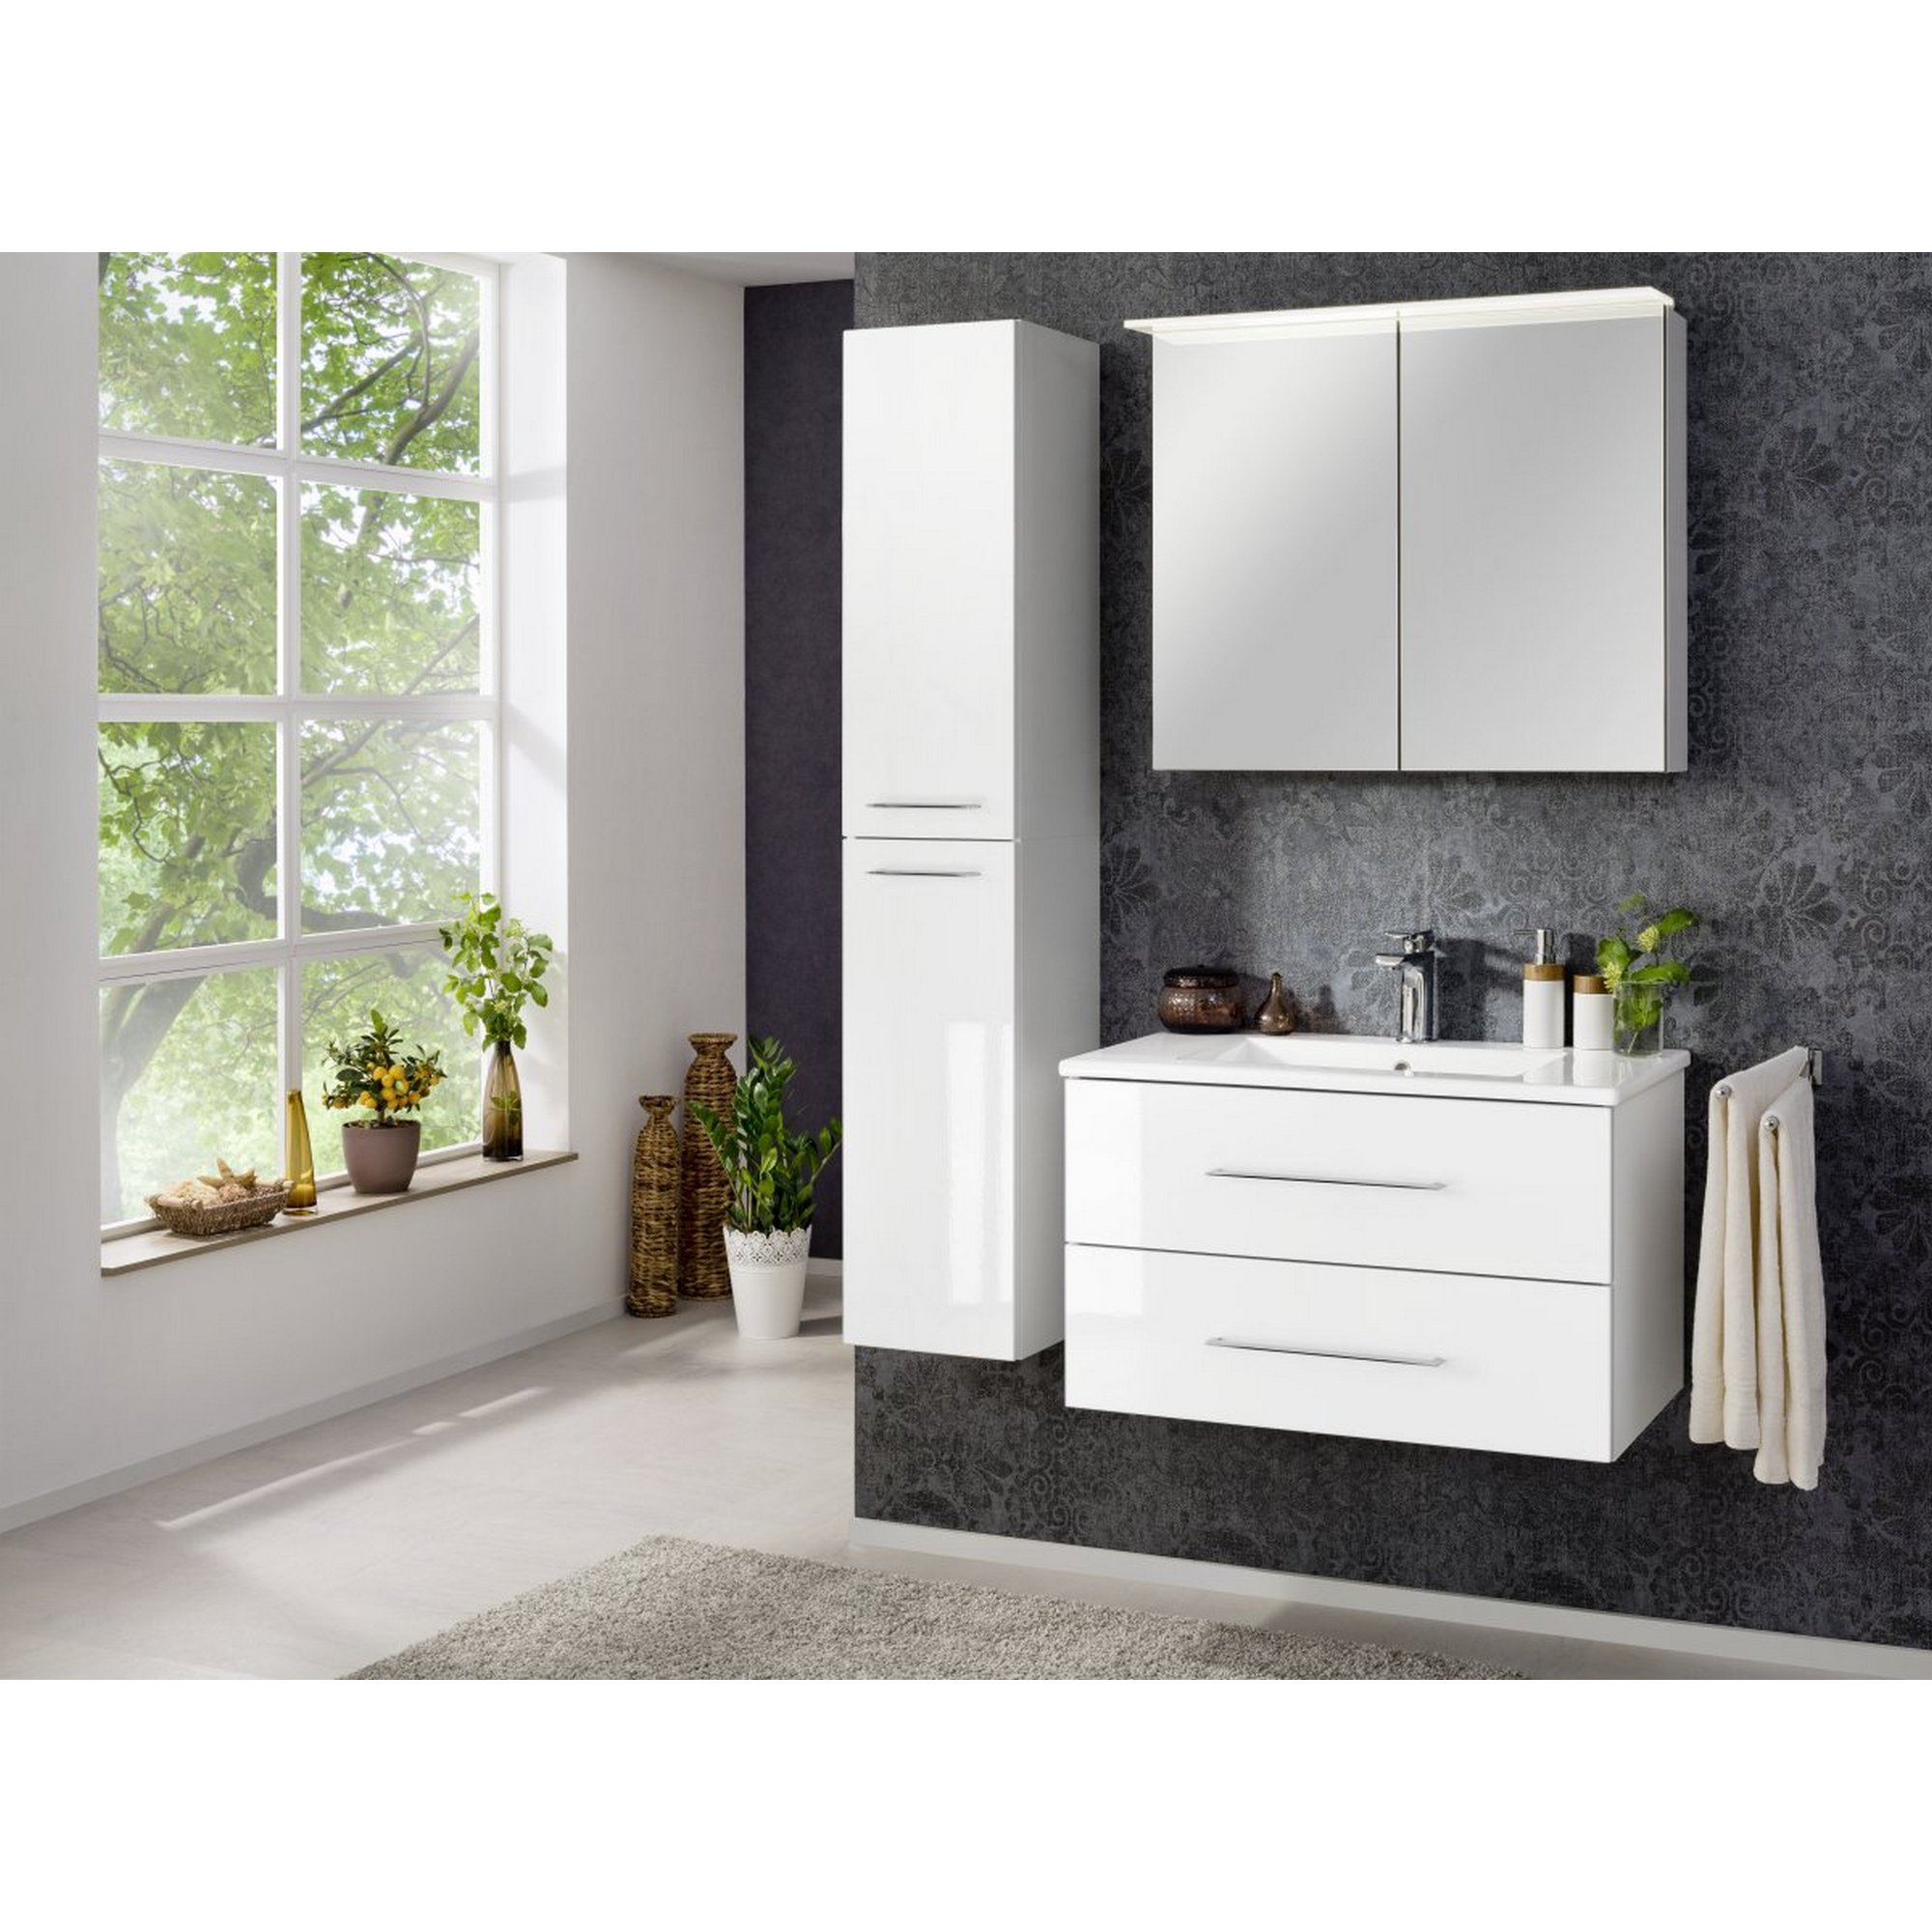 Waschbecken mit Unterschrank 'B.Perfekt' weiß 82 x 51 x 48 cm + product picture